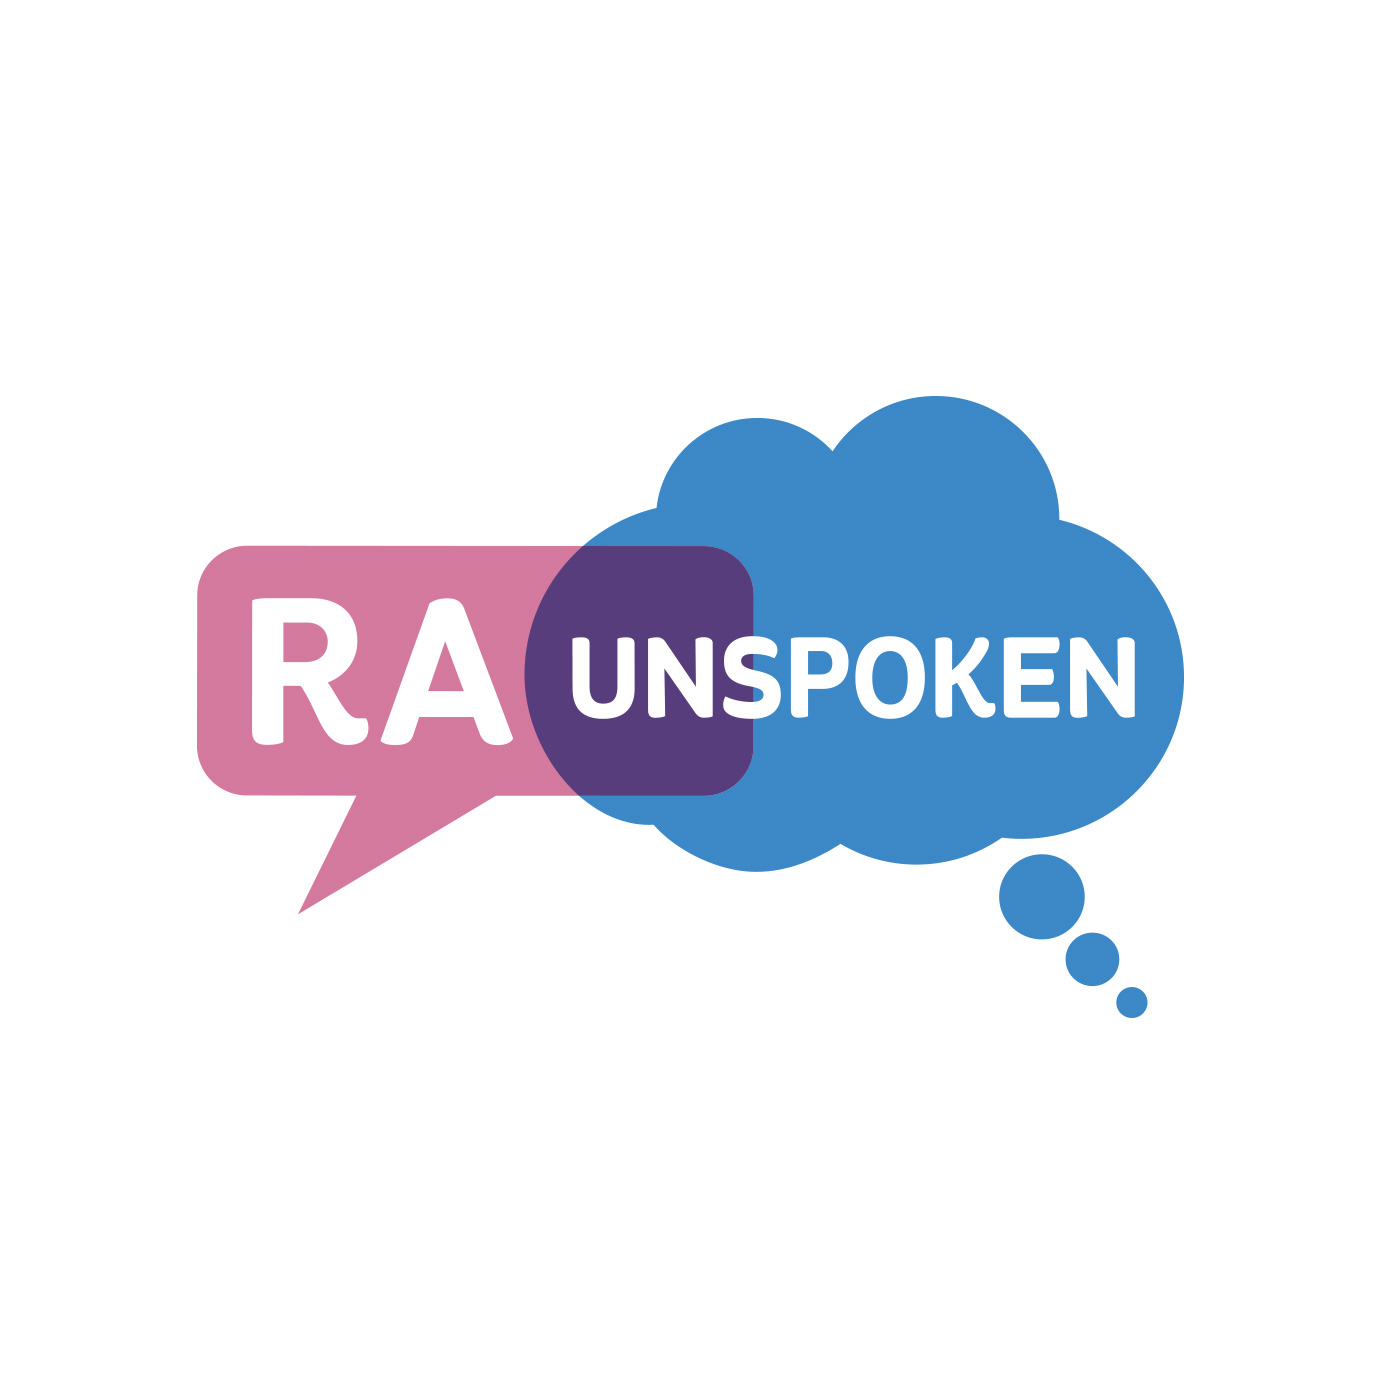 RA Unspoken